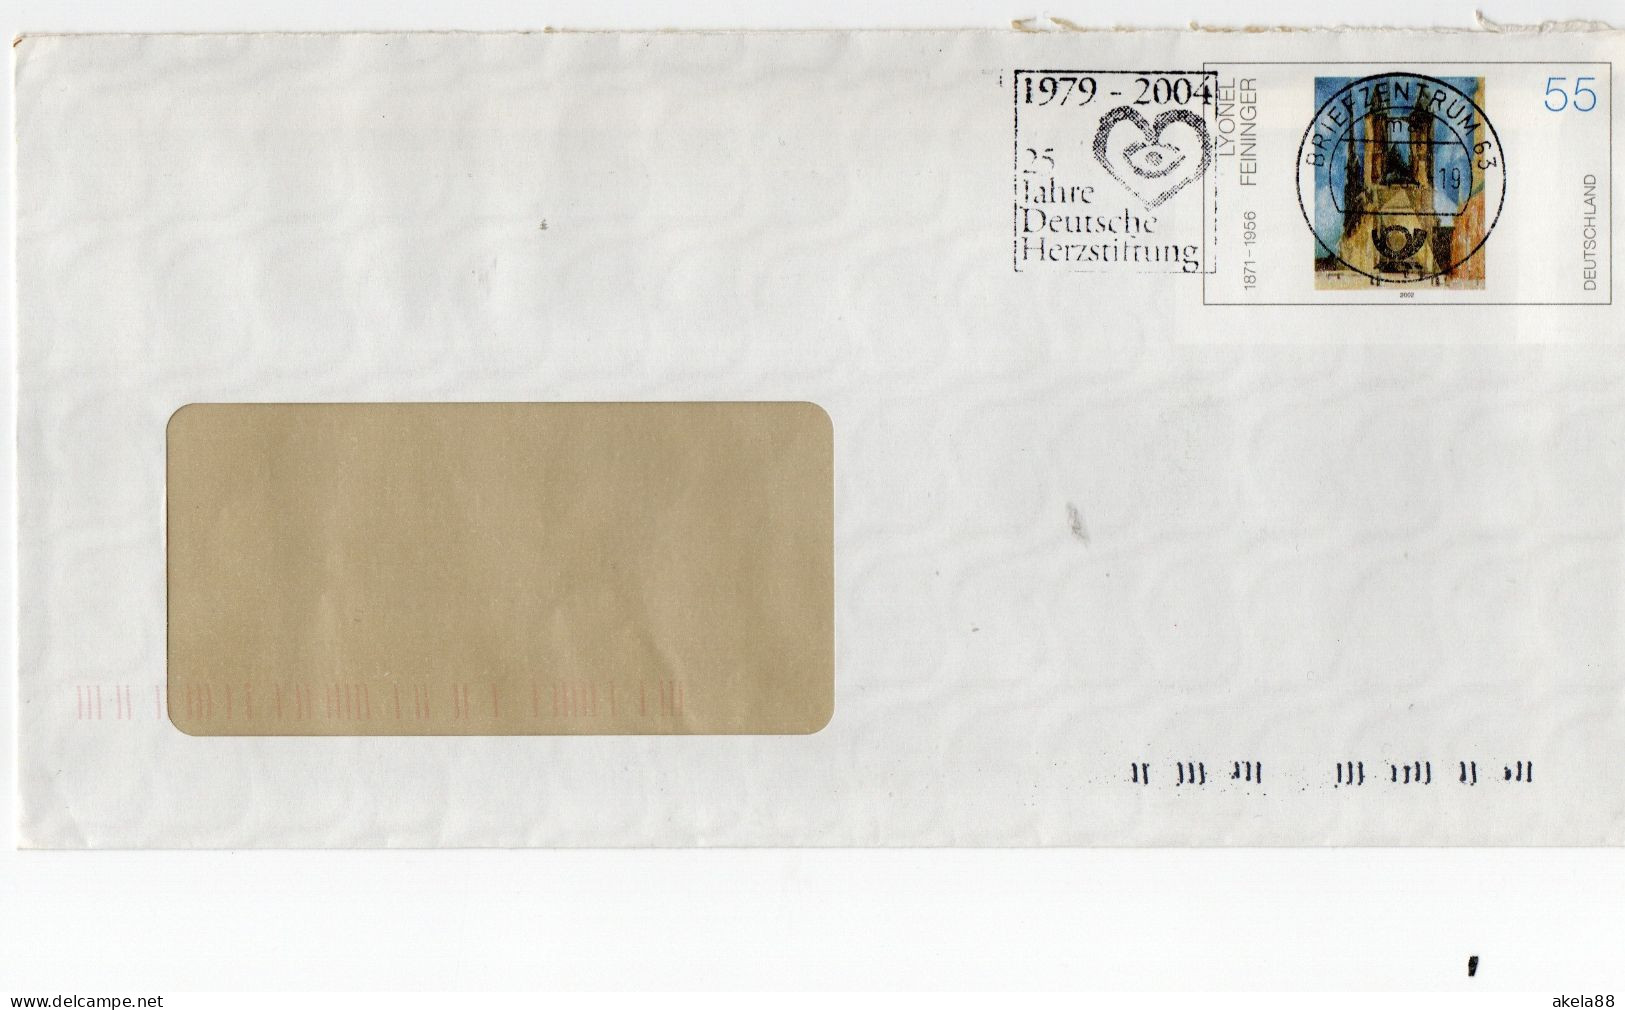 GERMANIA 2002 - LYONEL FEININGER - CHIESA DI HALLE MARKET - FONDAZIONE TEDESCA CUORE - B.C. 63 - FRANCOBOLLO PRESTAMPATO - Personalisierte Briefmarken